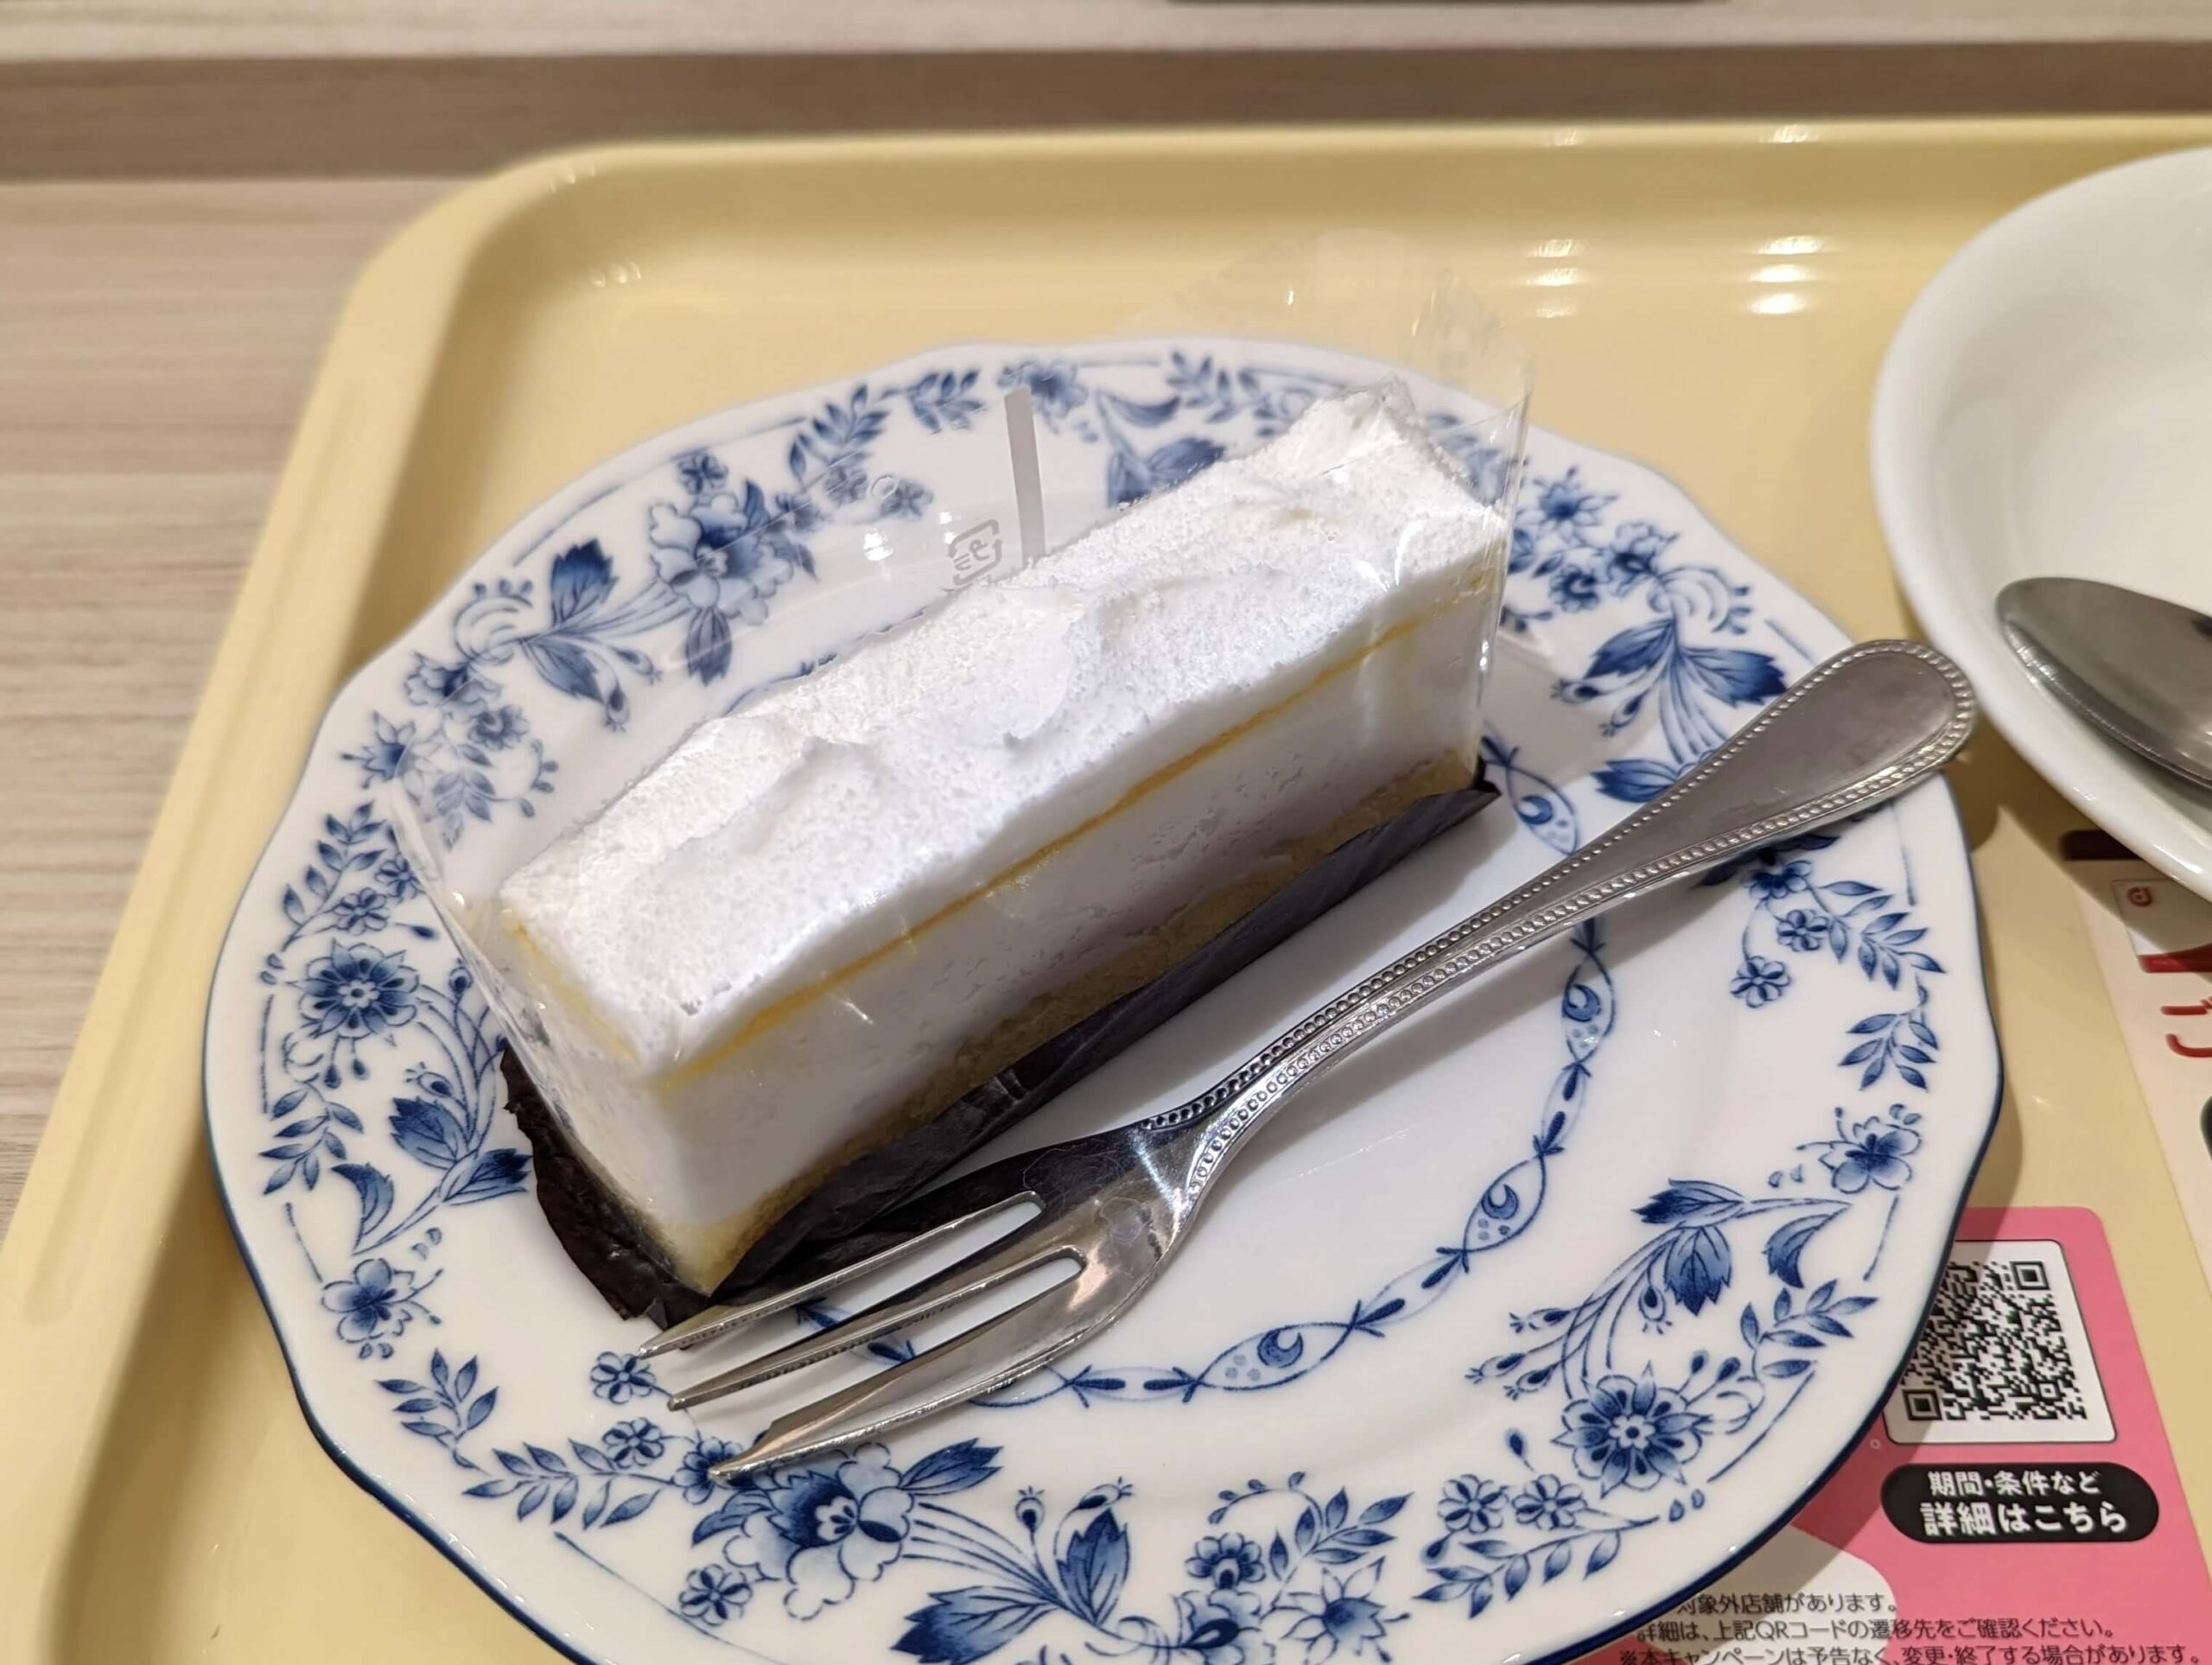 ドトール「レアチーズケーキ レモンソース仕立て」 (5)